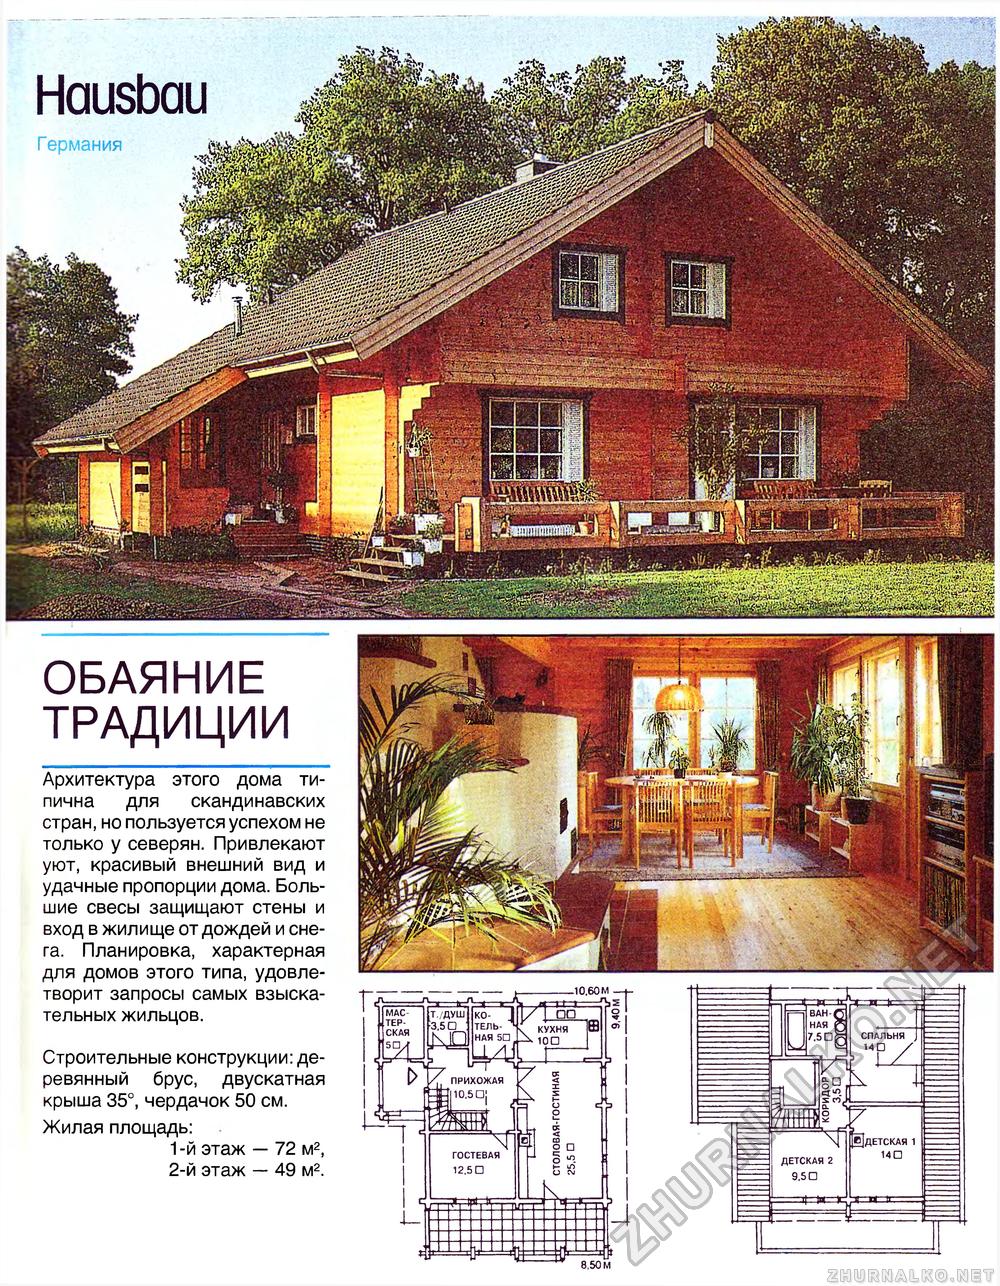 Дом 1996-06, страница 19